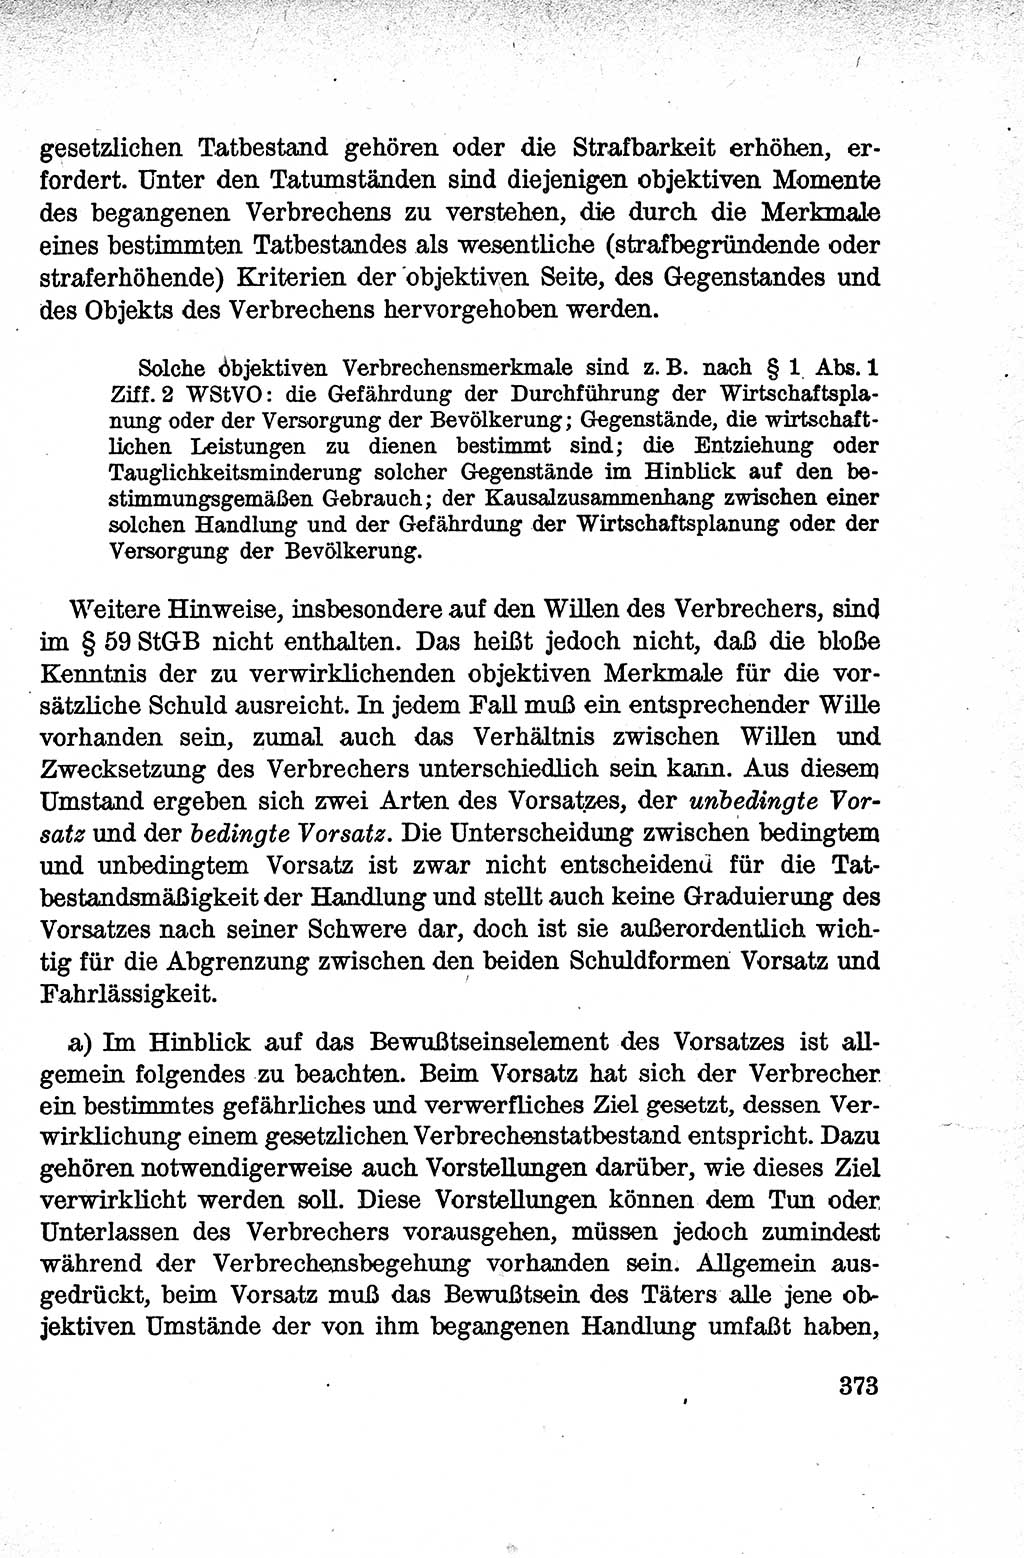 Lehrbuch des Strafrechts der Deutschen Demokratischen Republik (DDR), Allgemeiner Teil 1959, Seite 373 (Lb. Strafr. DDR AT 1959, S. 373)